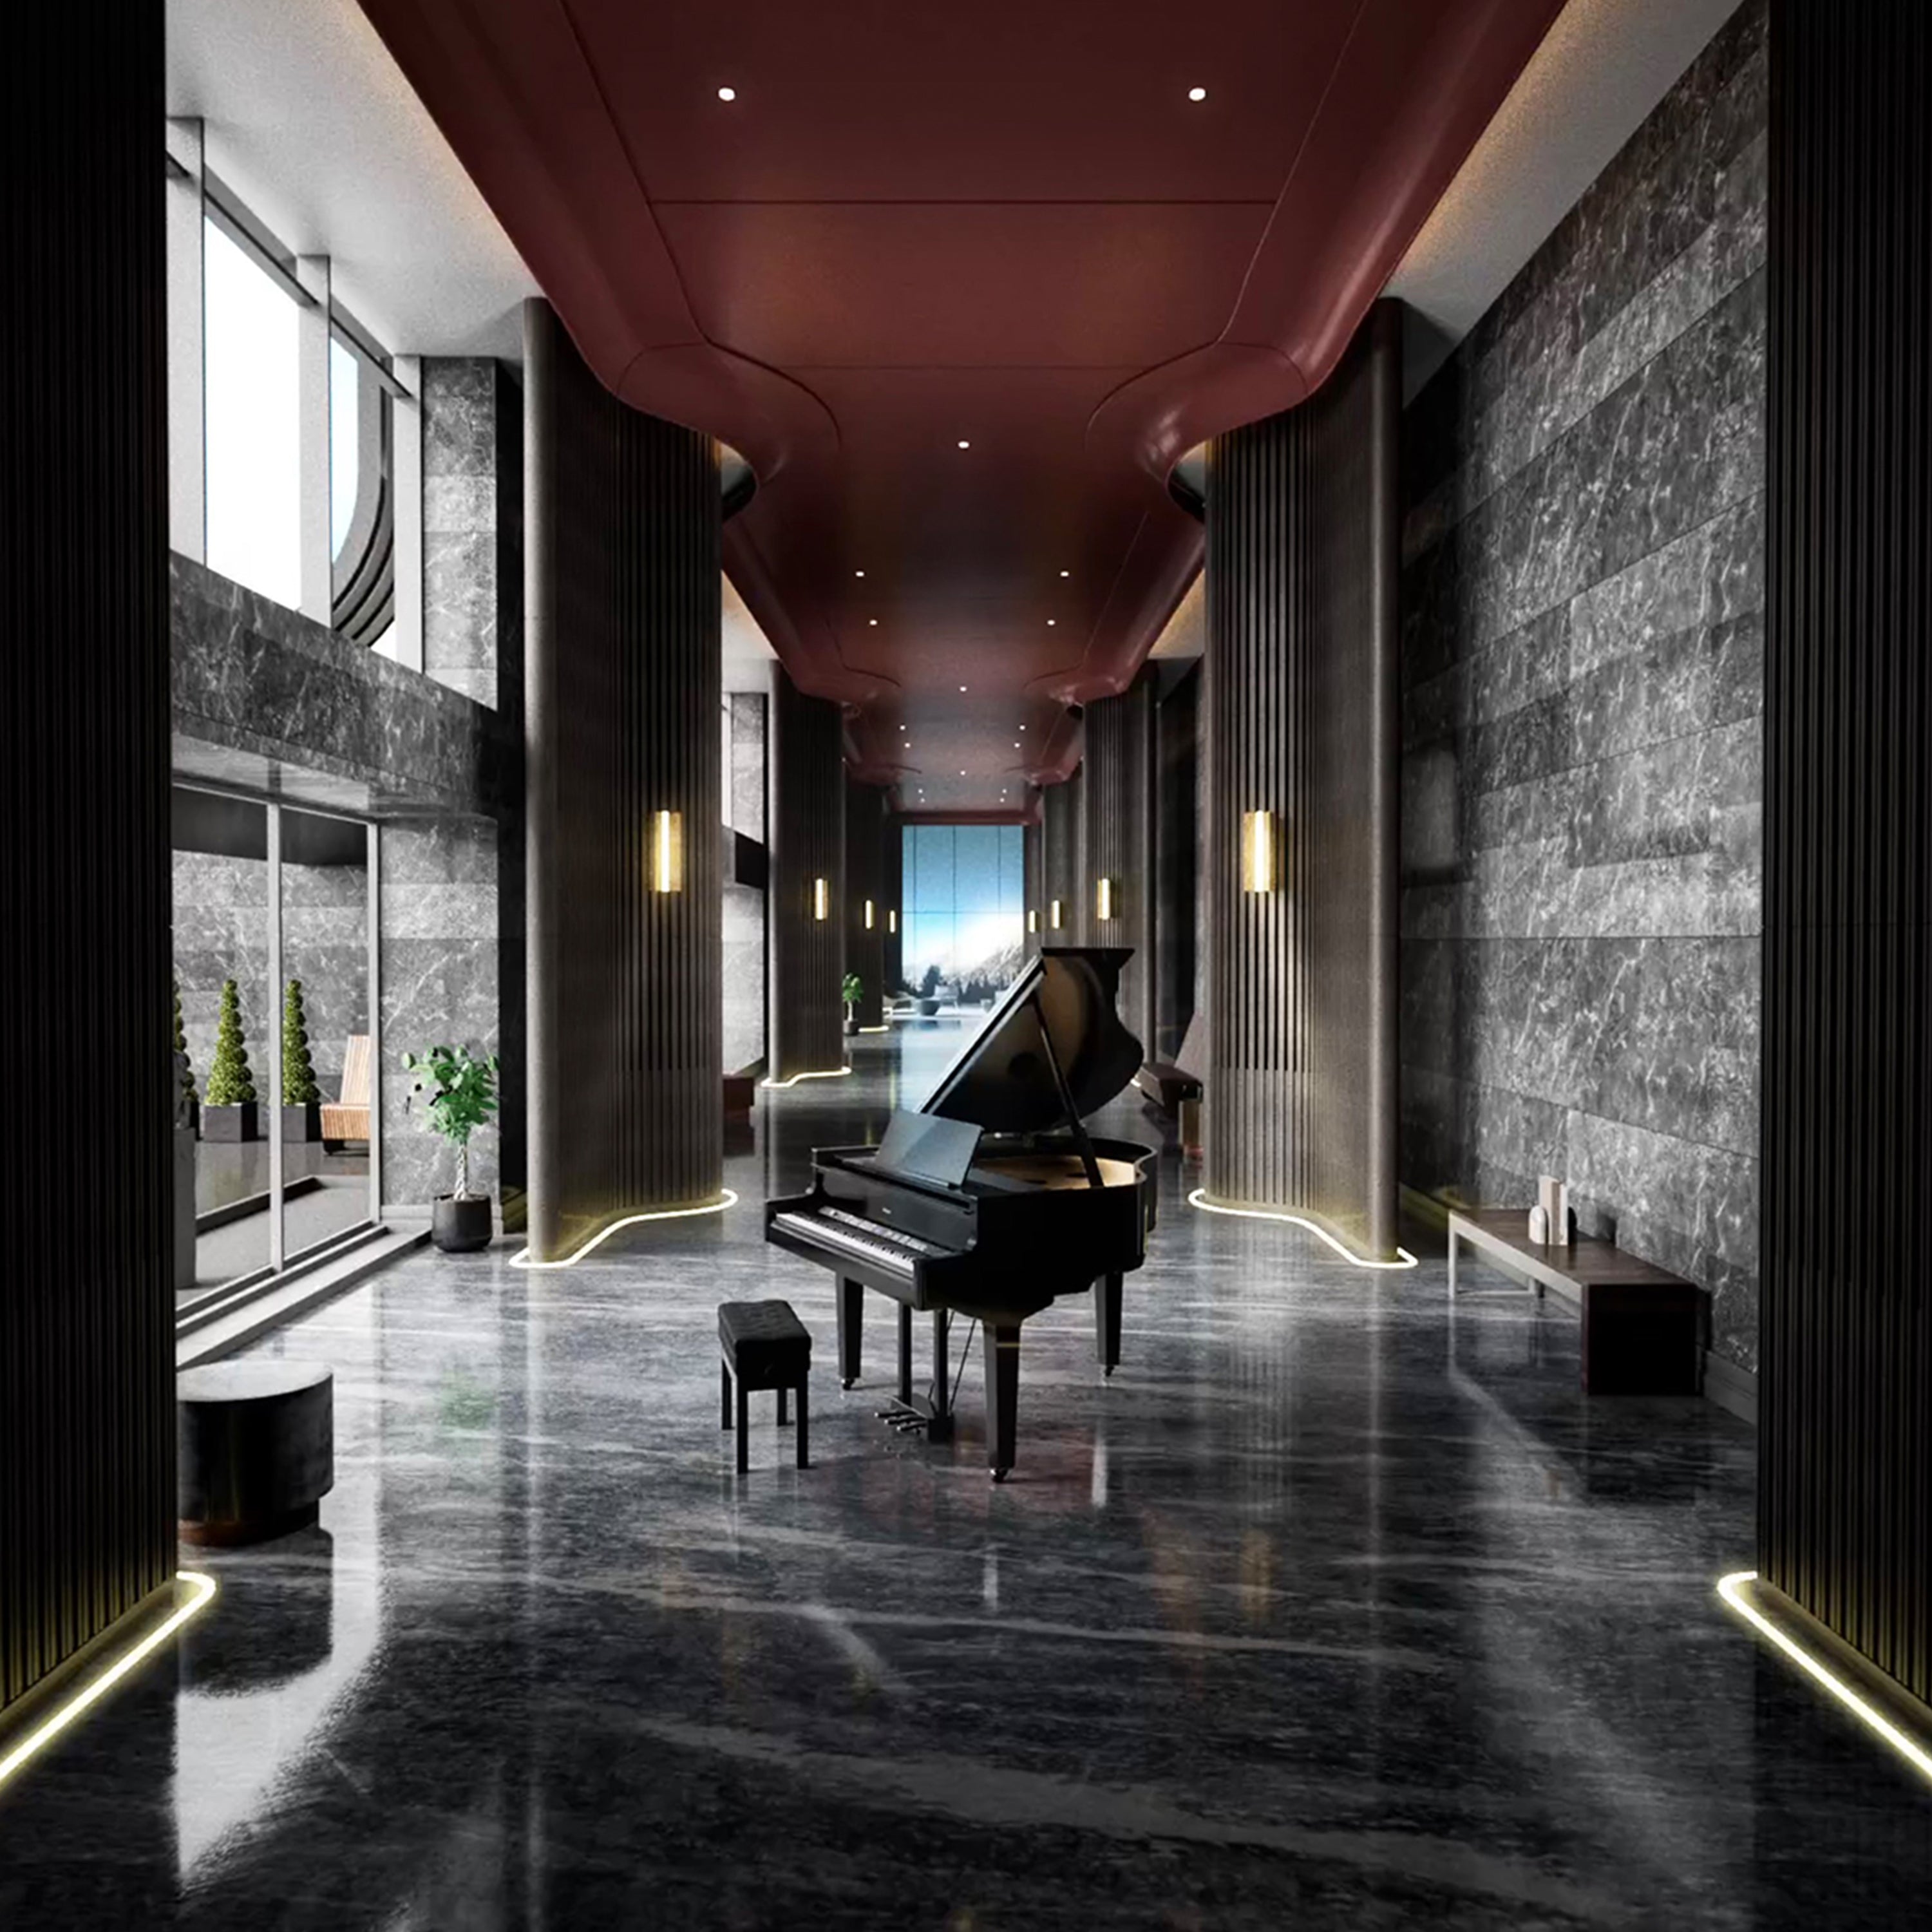 Roland GP-9M Digital Grand Piano with Moving Keys - Polished Ebony - in a stylish hallway